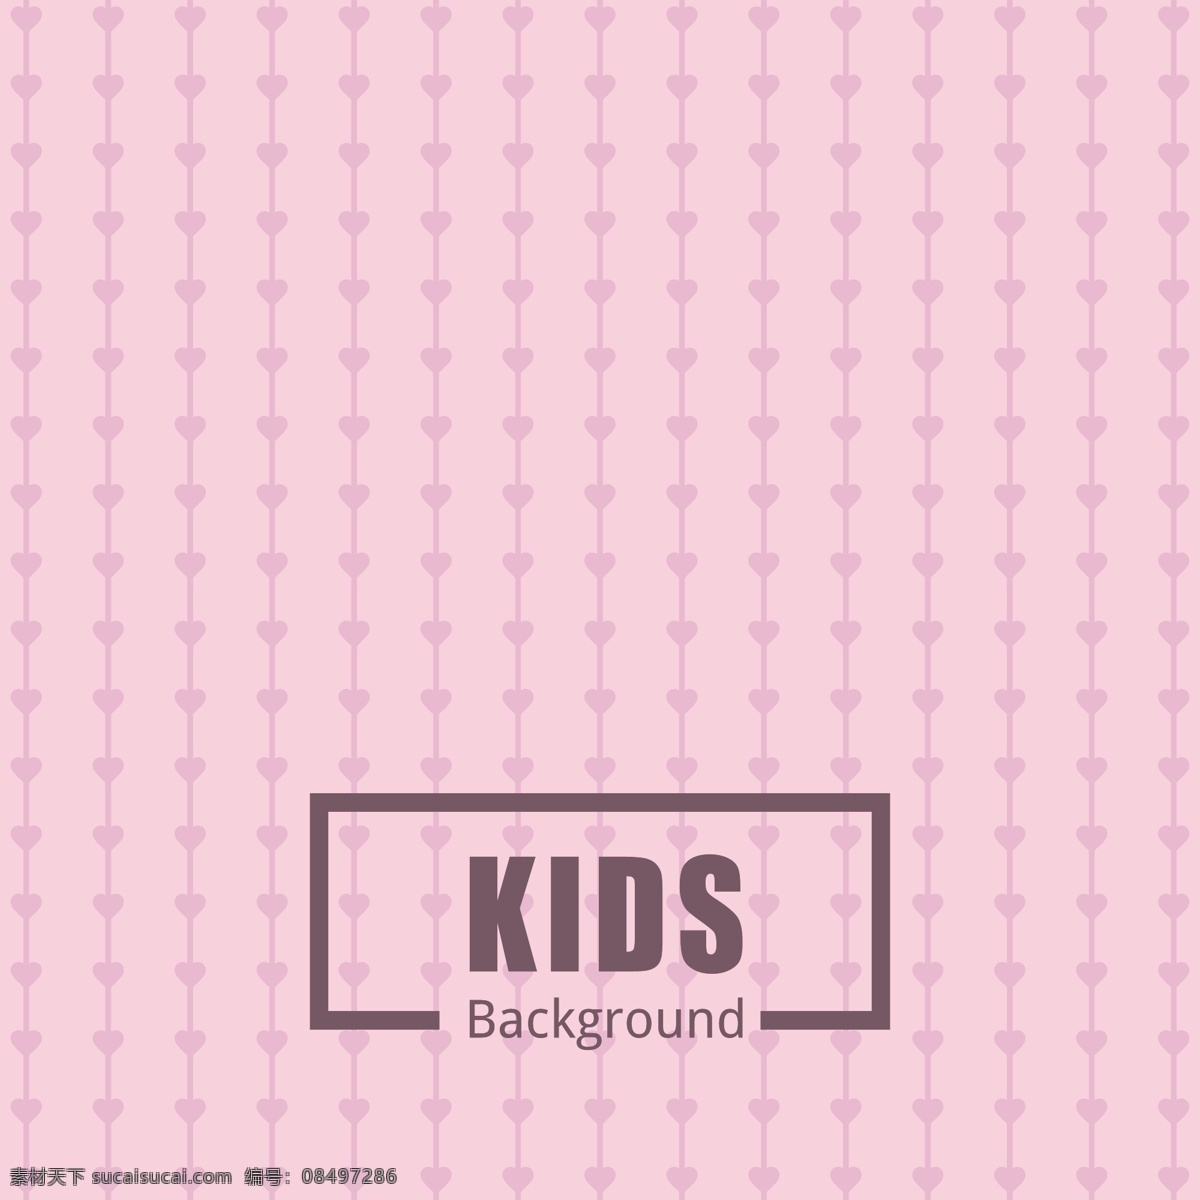 粉色图案背景 背景 图案 抽象 婴儿 儿童 纹理 圆形 可爱 装饰 绘图 圆点 甜 圆 印刷 马赛克 无缝 循环